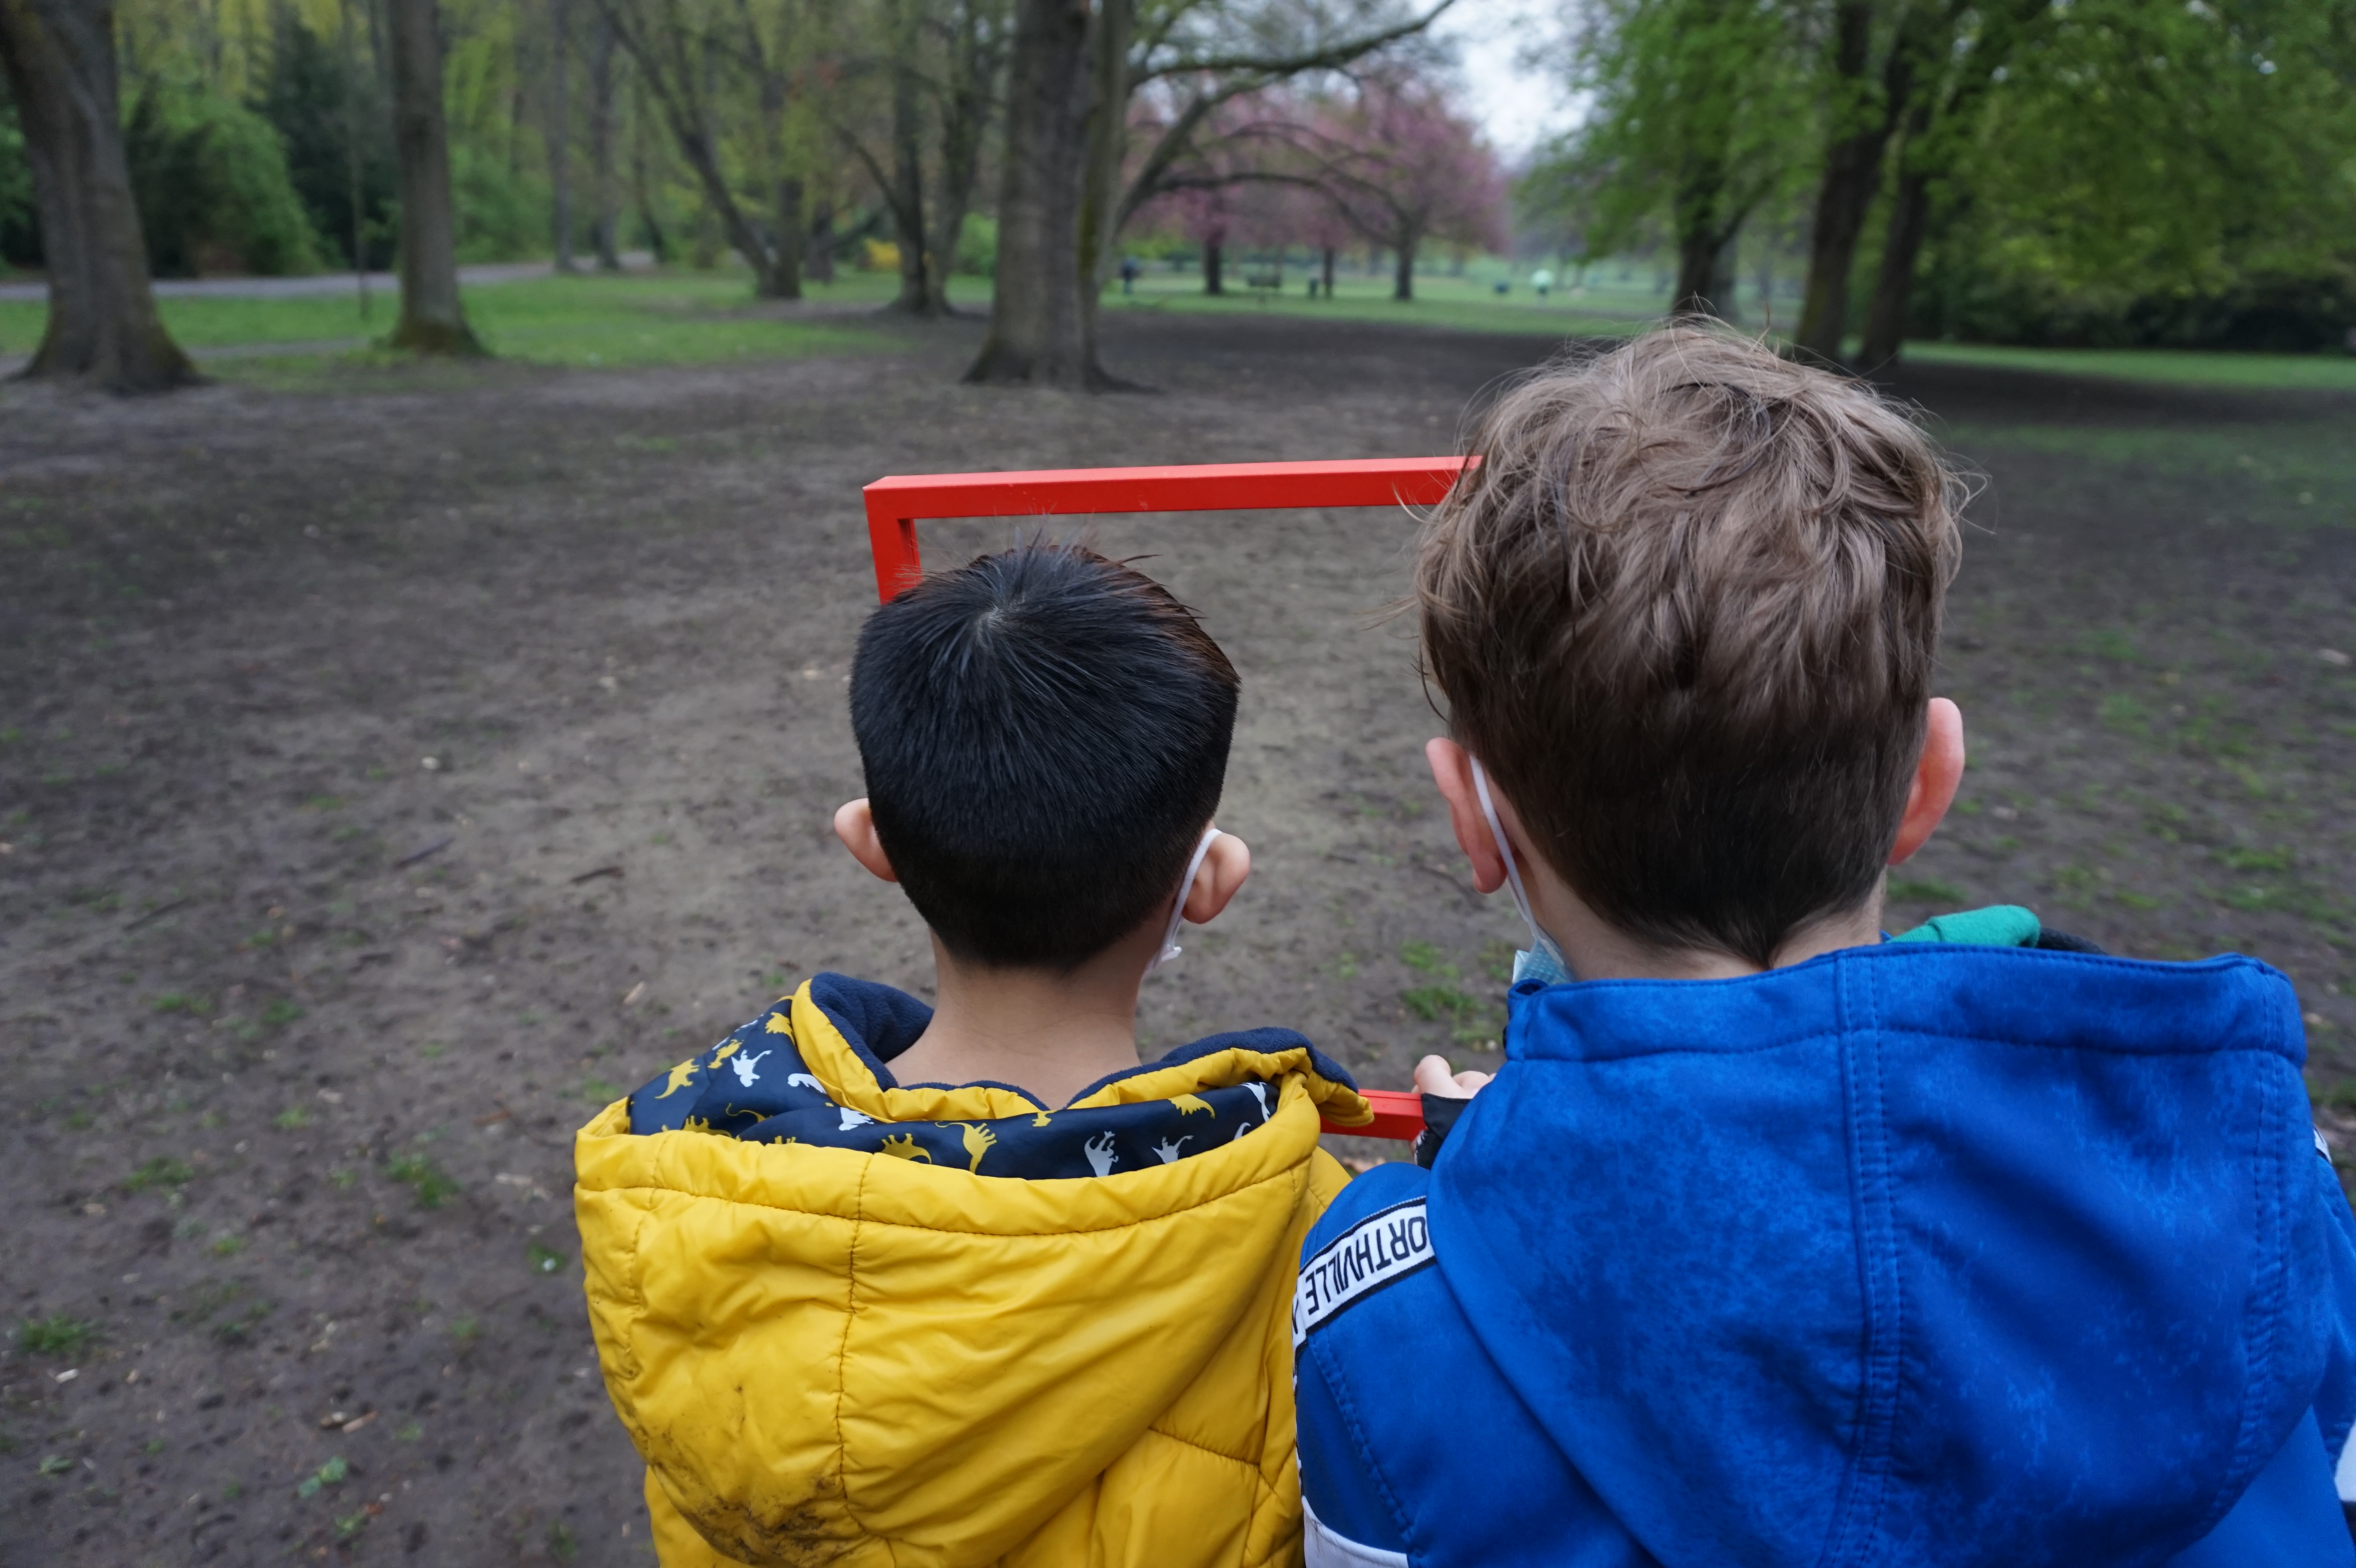 Zwei Kinder im Alter von etwa sieben oder acht Jahren sind von hinten zu sehen, wie sie im Park durch einen roten Rahmen schauen.